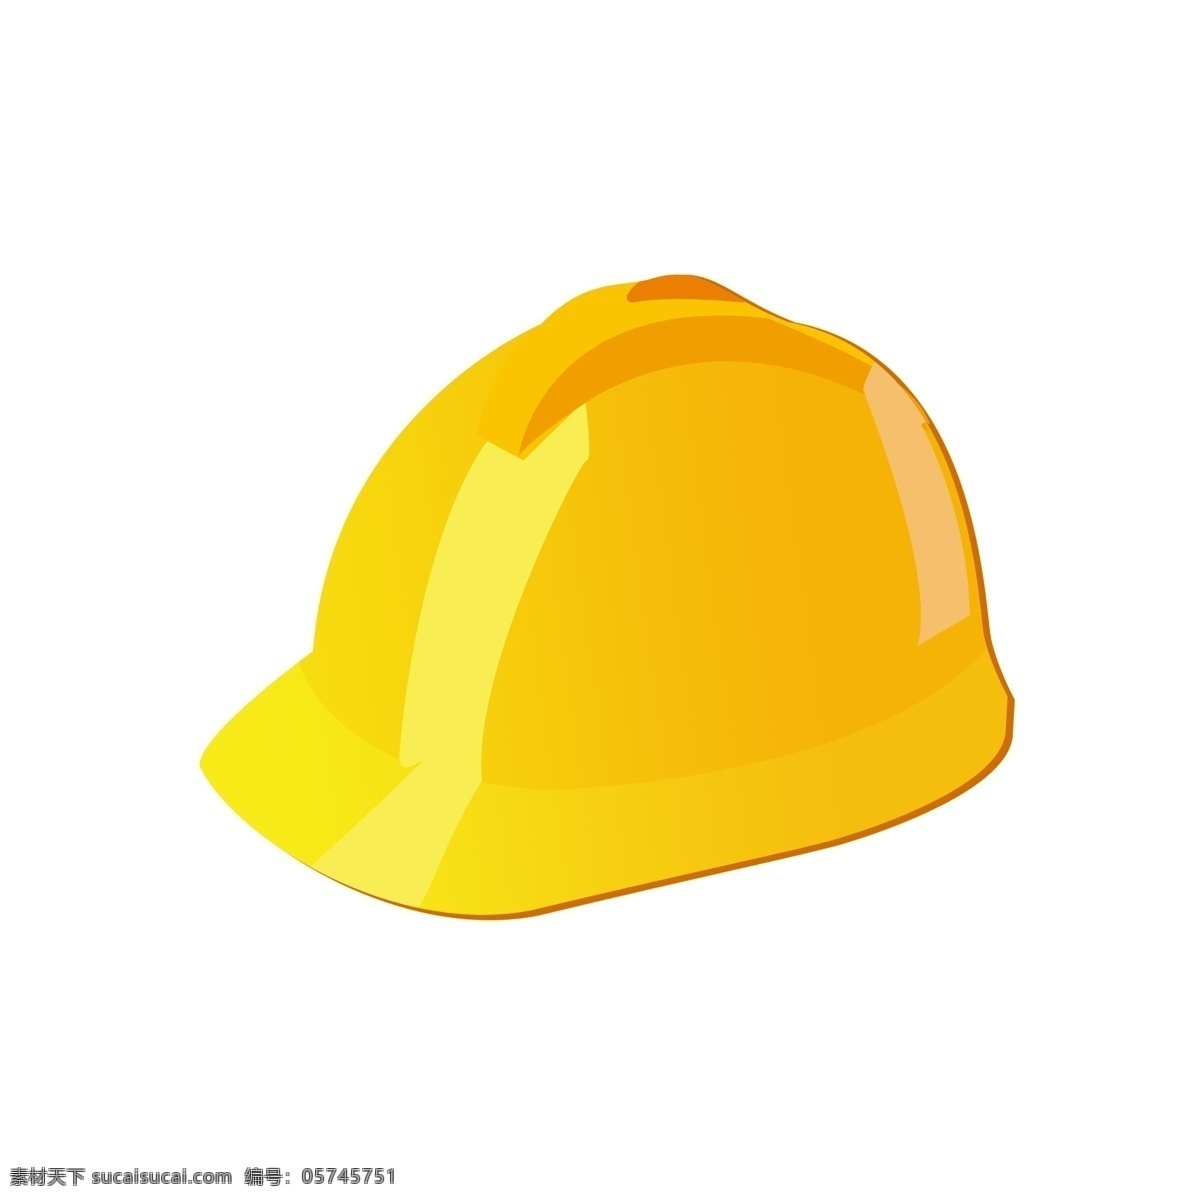 矢量图 黄色 消防 帽 消防用具 橙色 帽子 卡通设计 抽象